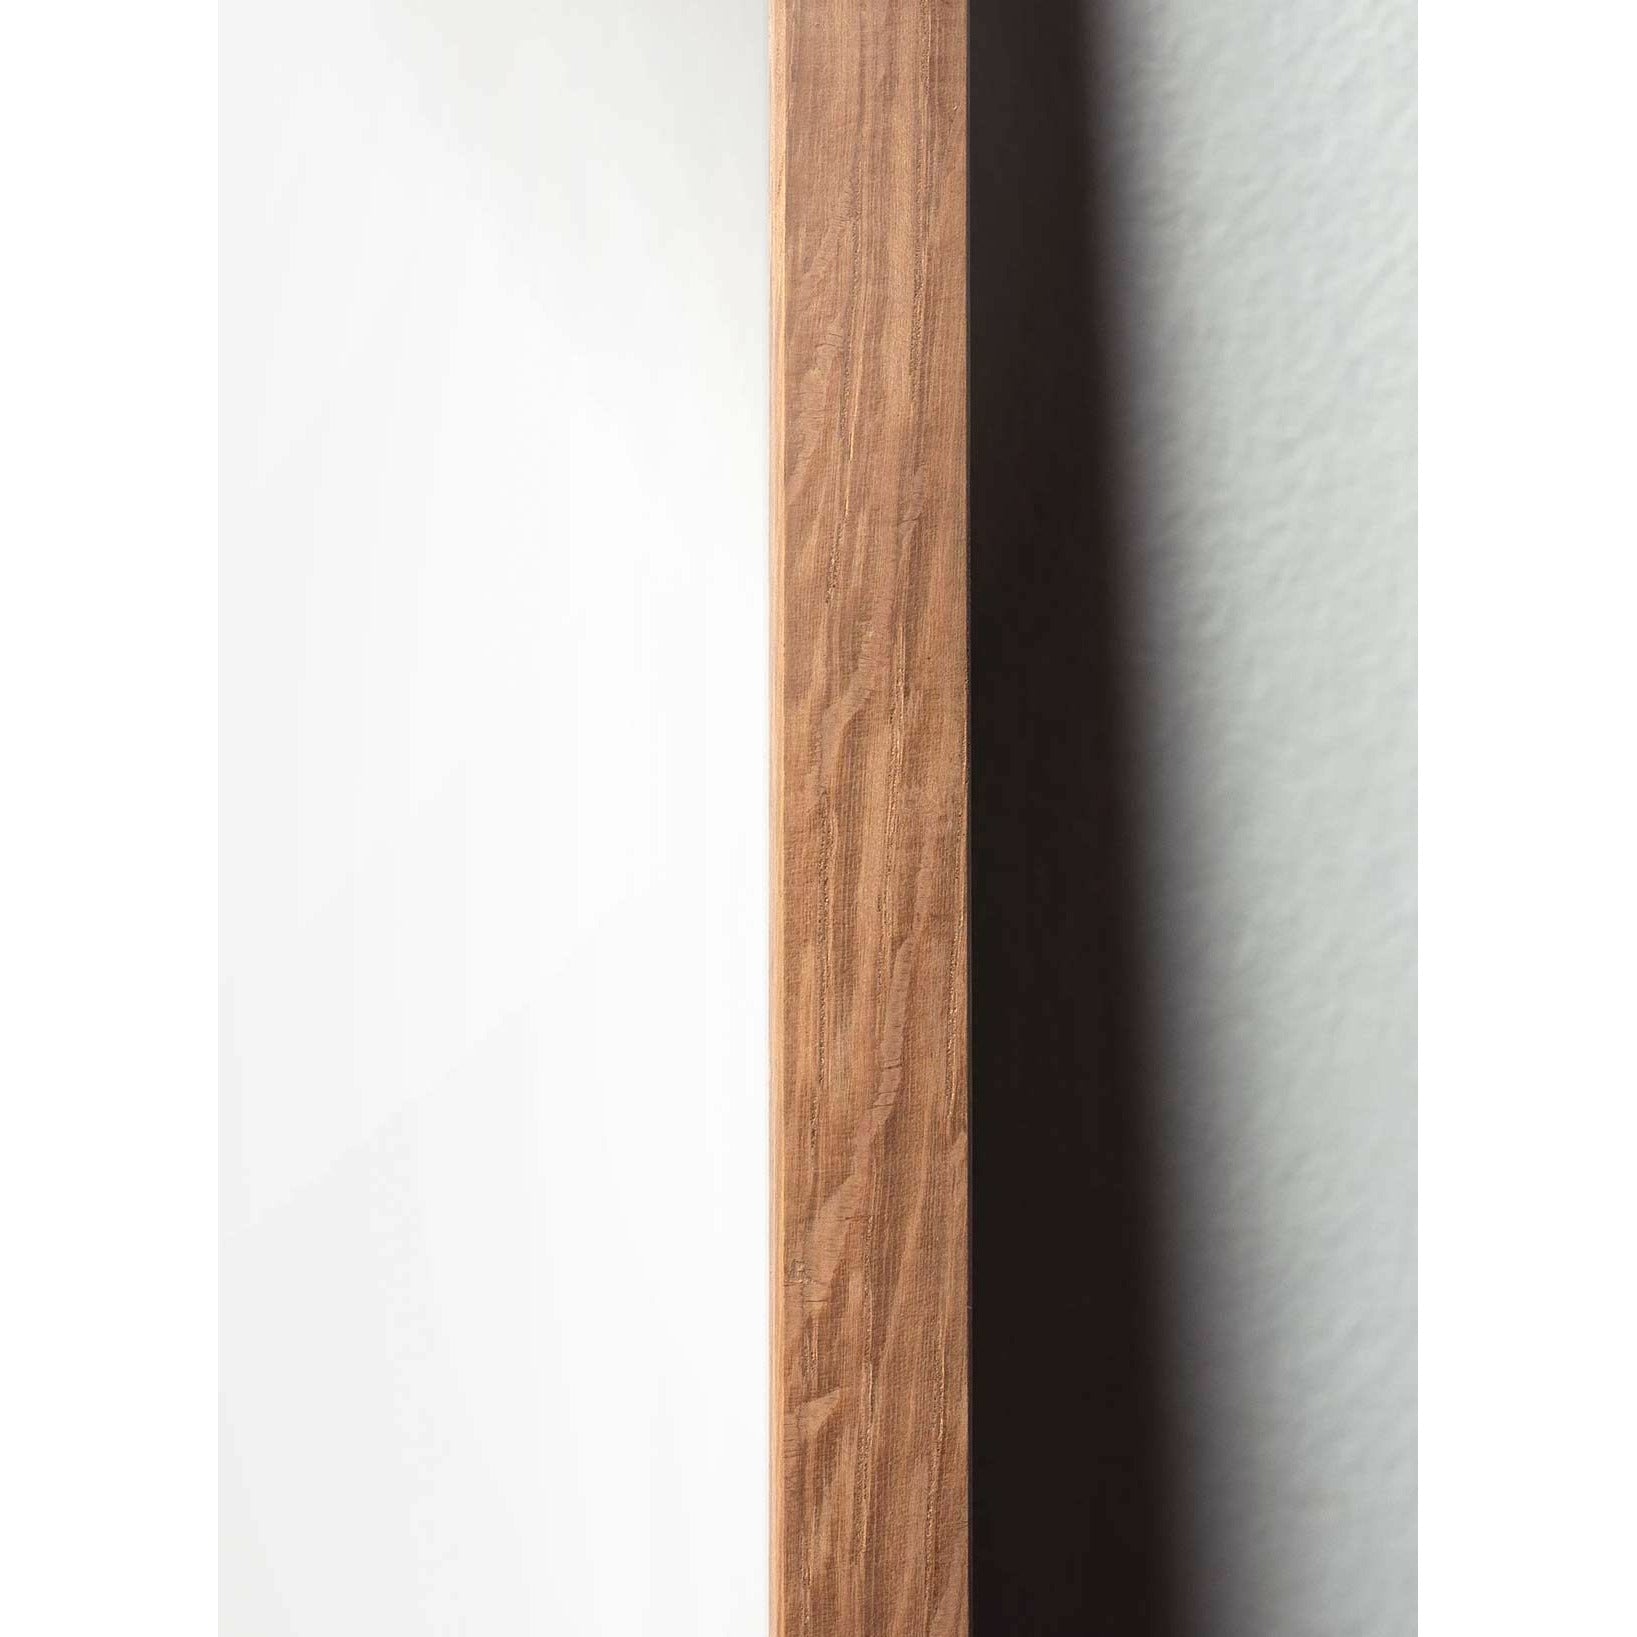 brainchild Munahahmot juliste, kevyestä puusta valmistettu runko 30x40 cm, ruskea